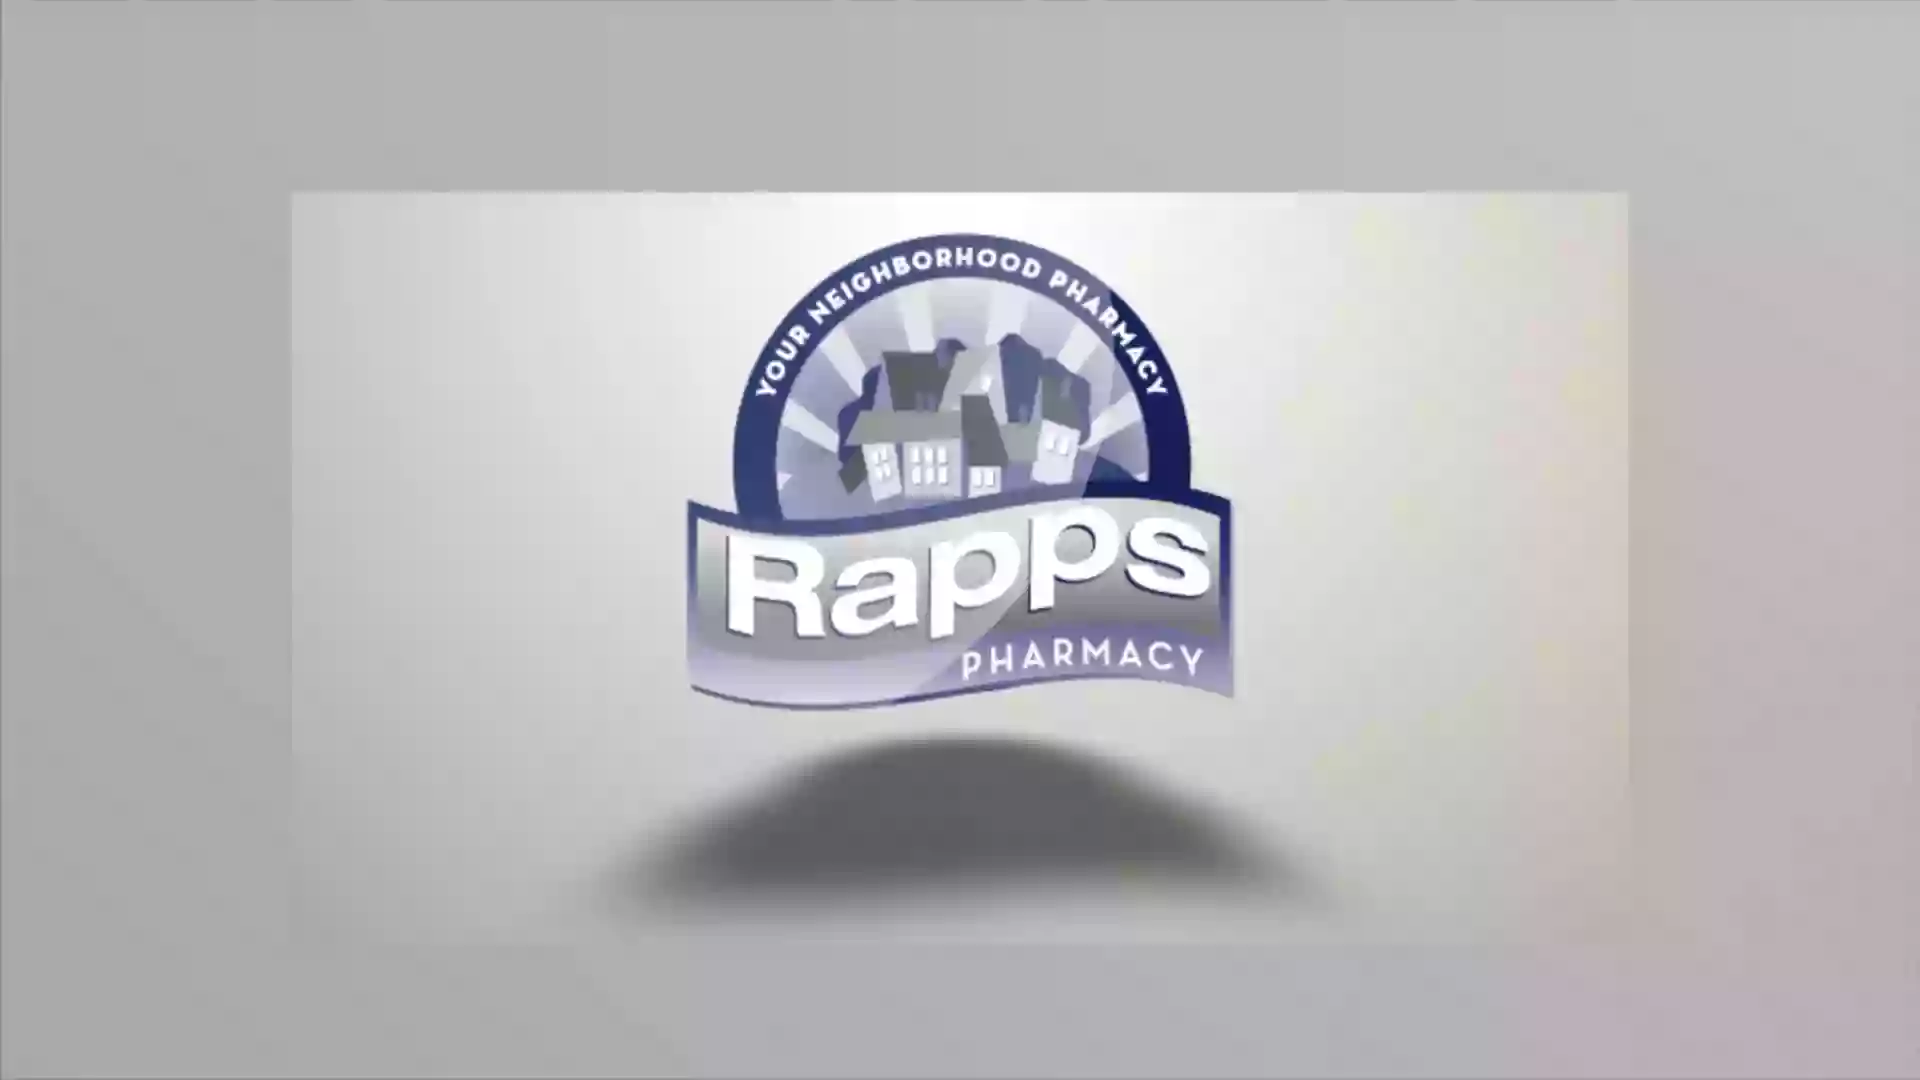 Rapps Pharmacy